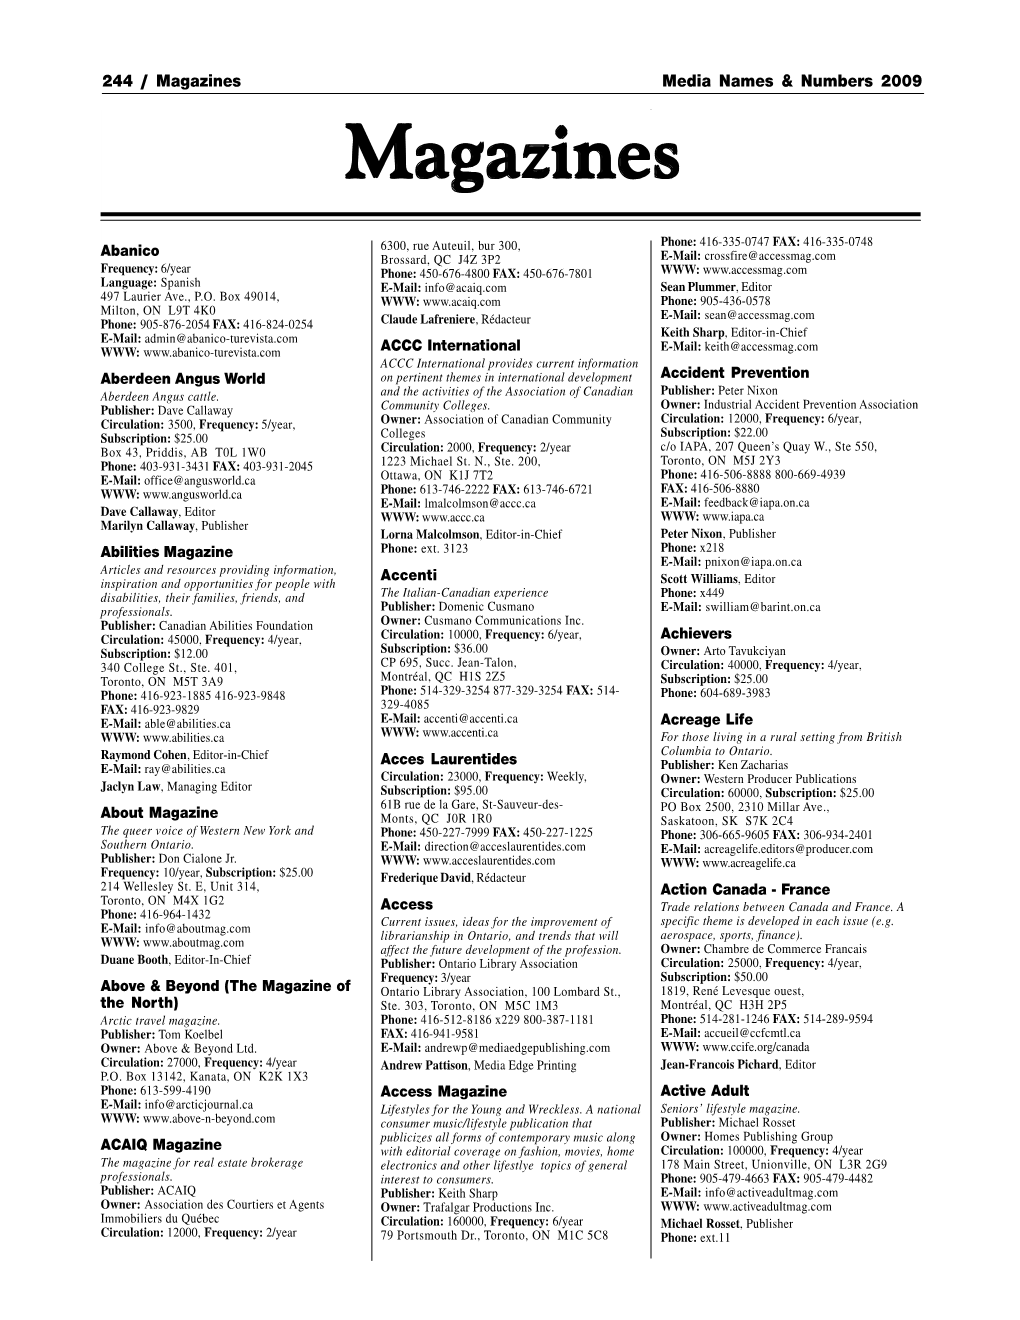 Magazines Media Names & Numbers 2009 Magazinesmagazines